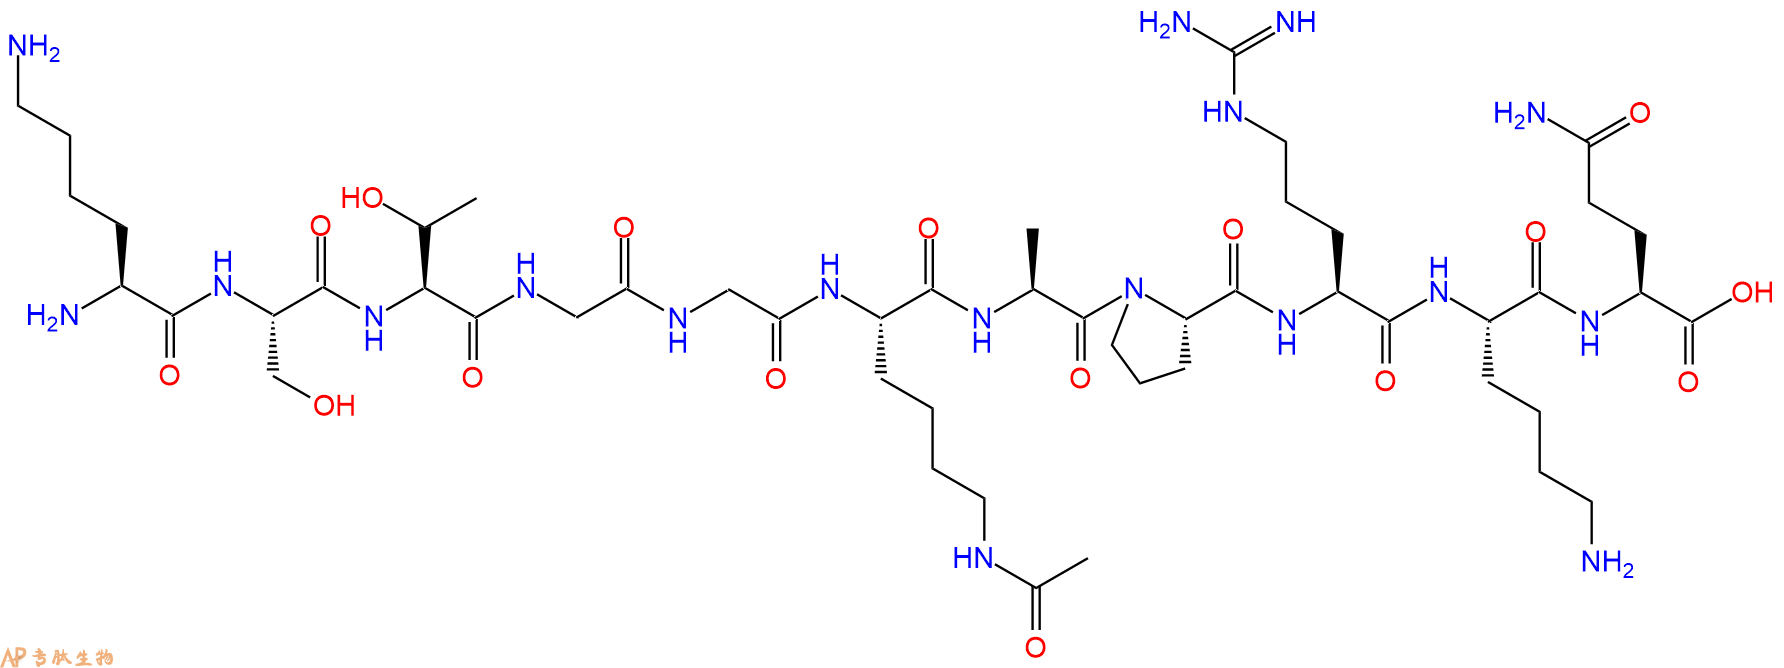 专肽生物产品组蛋白肽段[Lys(Ac)14]-Histone H3(9-19), H3K14(Ac)